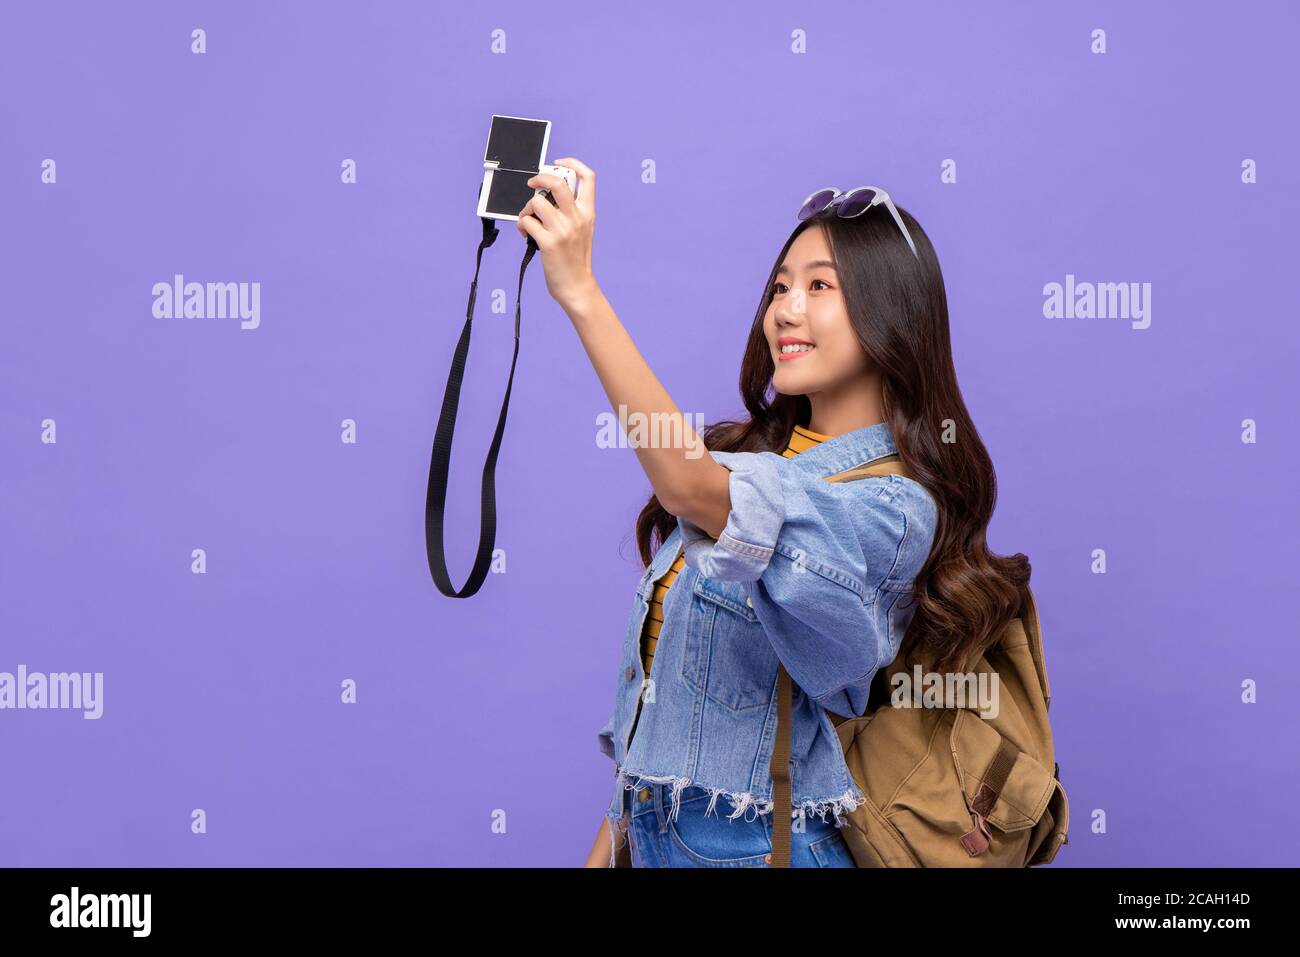 Lächelnd junge asiatische Frau Tourist Backpacker nimmt Selfie mit Kamera Isoliert auf violettem Hintergrund Stockfoto